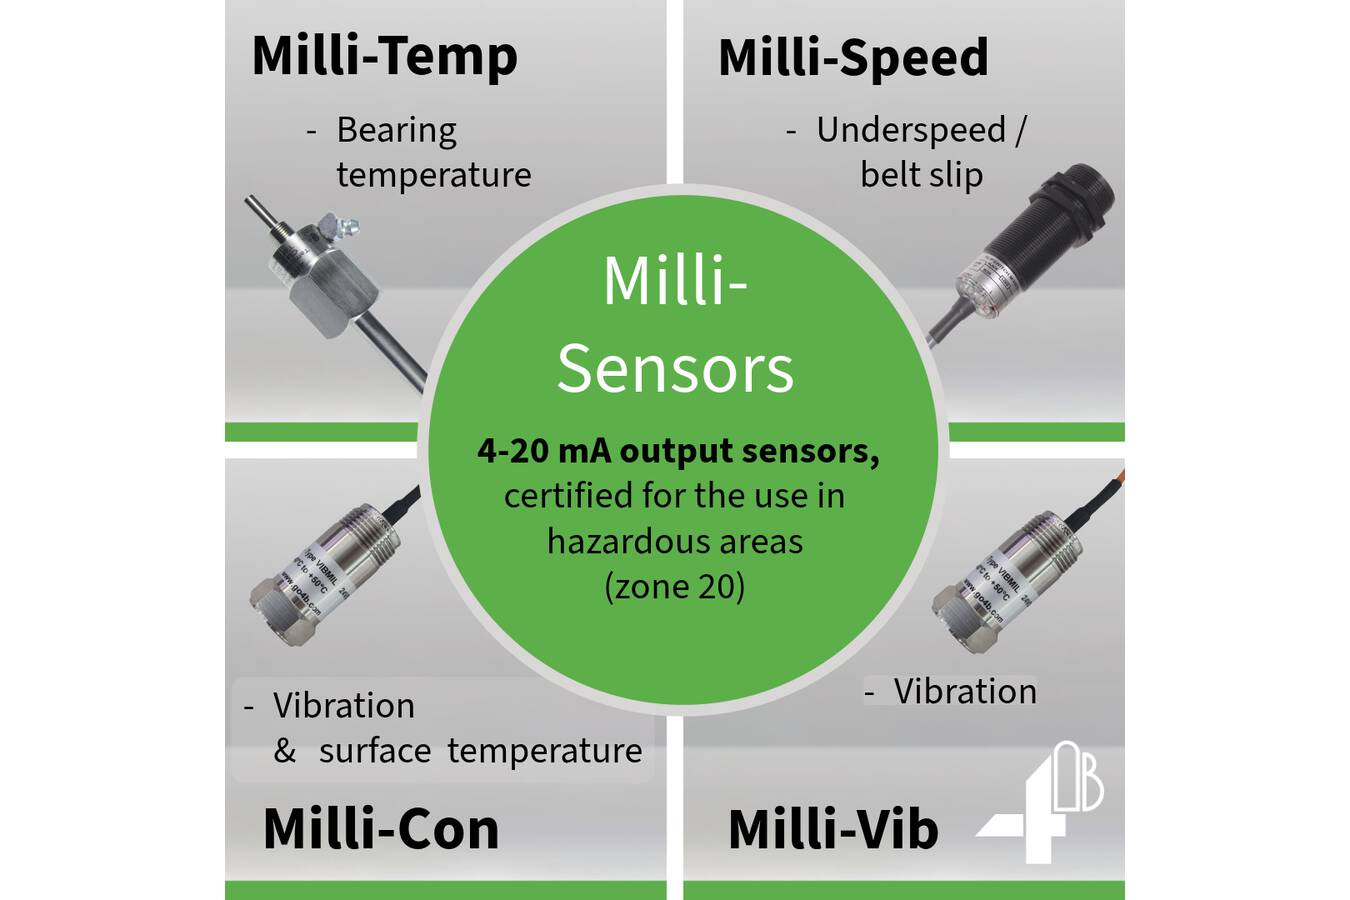 4B erweitert Milli-Sortiment von ATEX Überwachungssensoren Die 4B Group erweitert ihr ATEX-zugelassenes ”Milli” Sortiment durch die Einführung der Schwingungssensoren Milli-Vib und Milli-Con. 